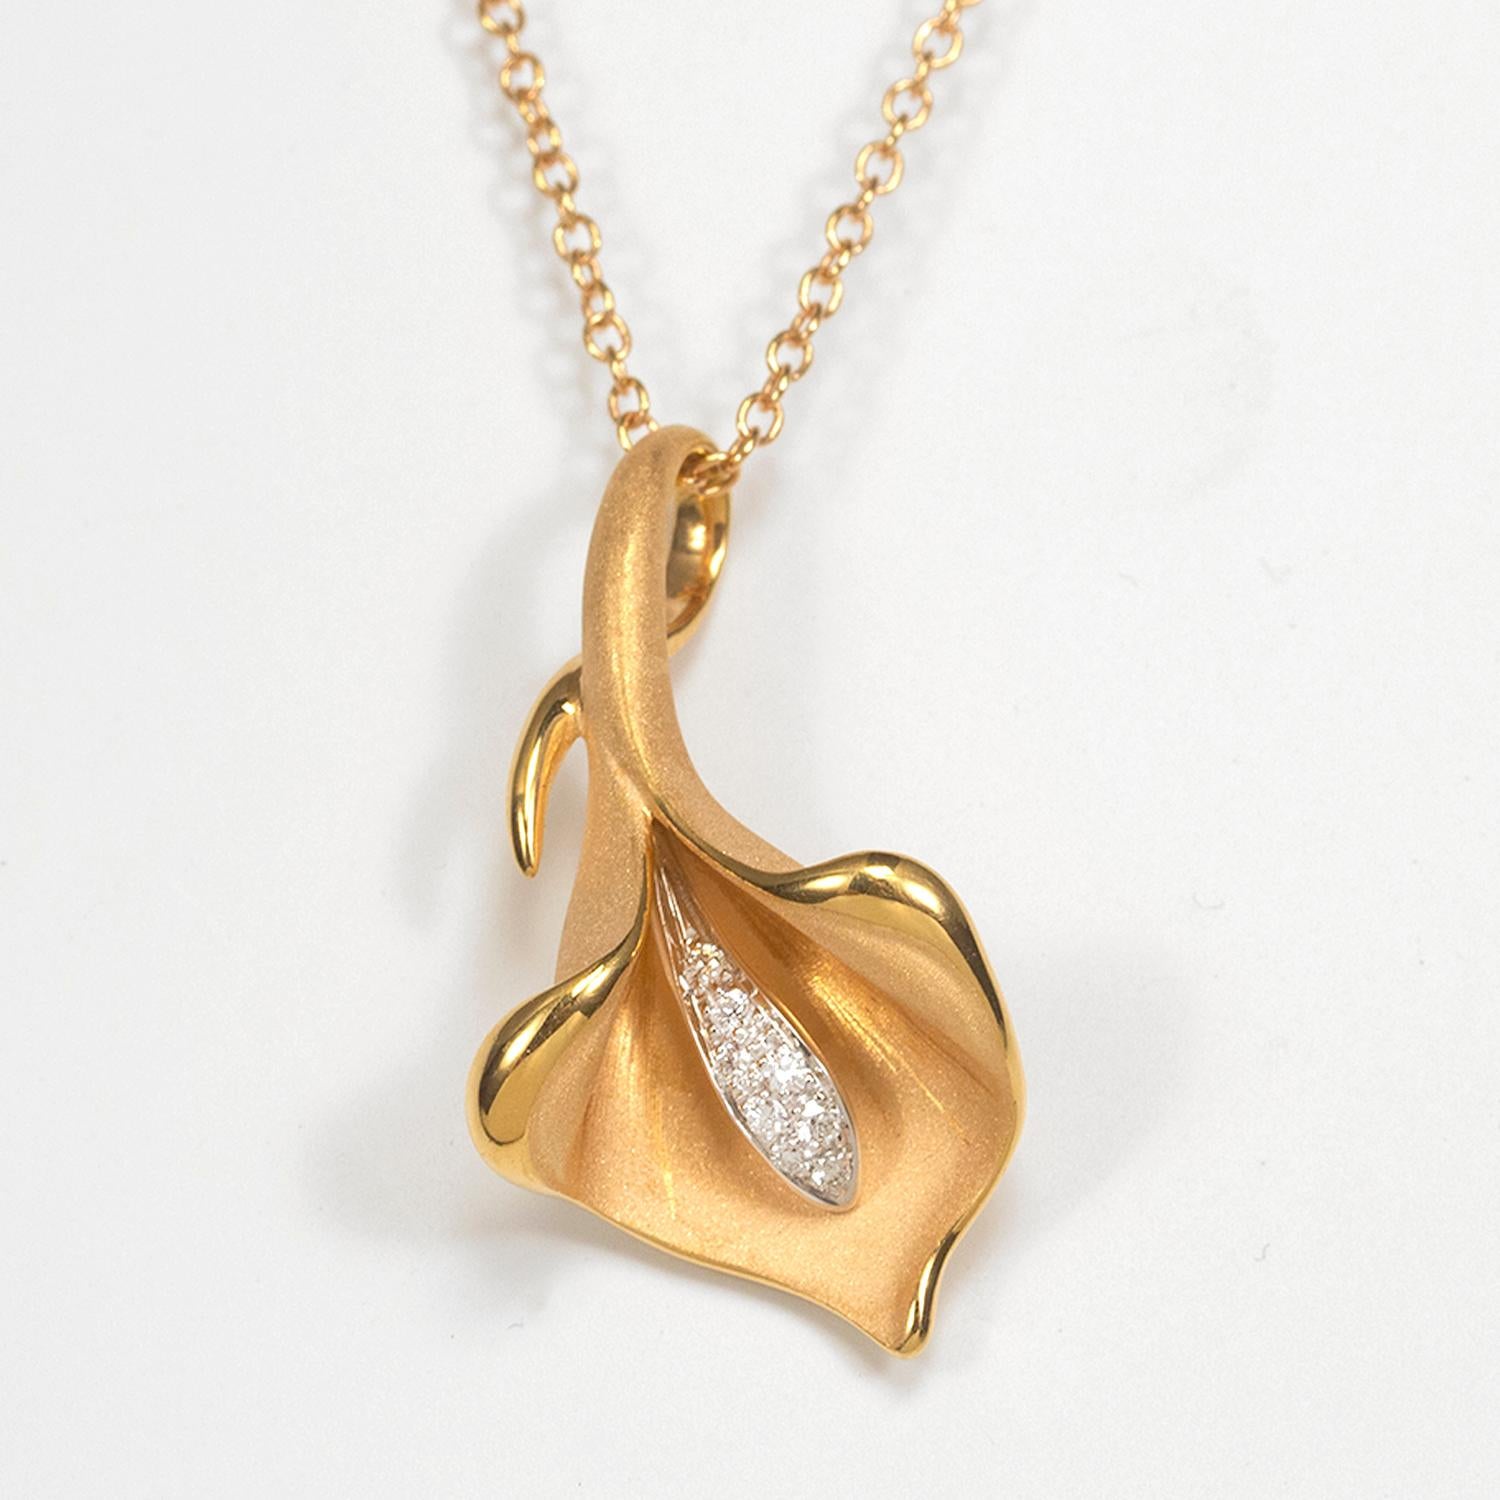 Aus der Calla Collection von Annamaria Cammilli, Anhänger in Form einer Calla-Blüte, handgefertigt aus 18 Karat Apricot-Orange-Gold. Handgefertigt aus poliertem und satiniertem Gold, mit Diamanten. Das Gesamtgewicht der Diamanten beträgt 0,09 Karat.